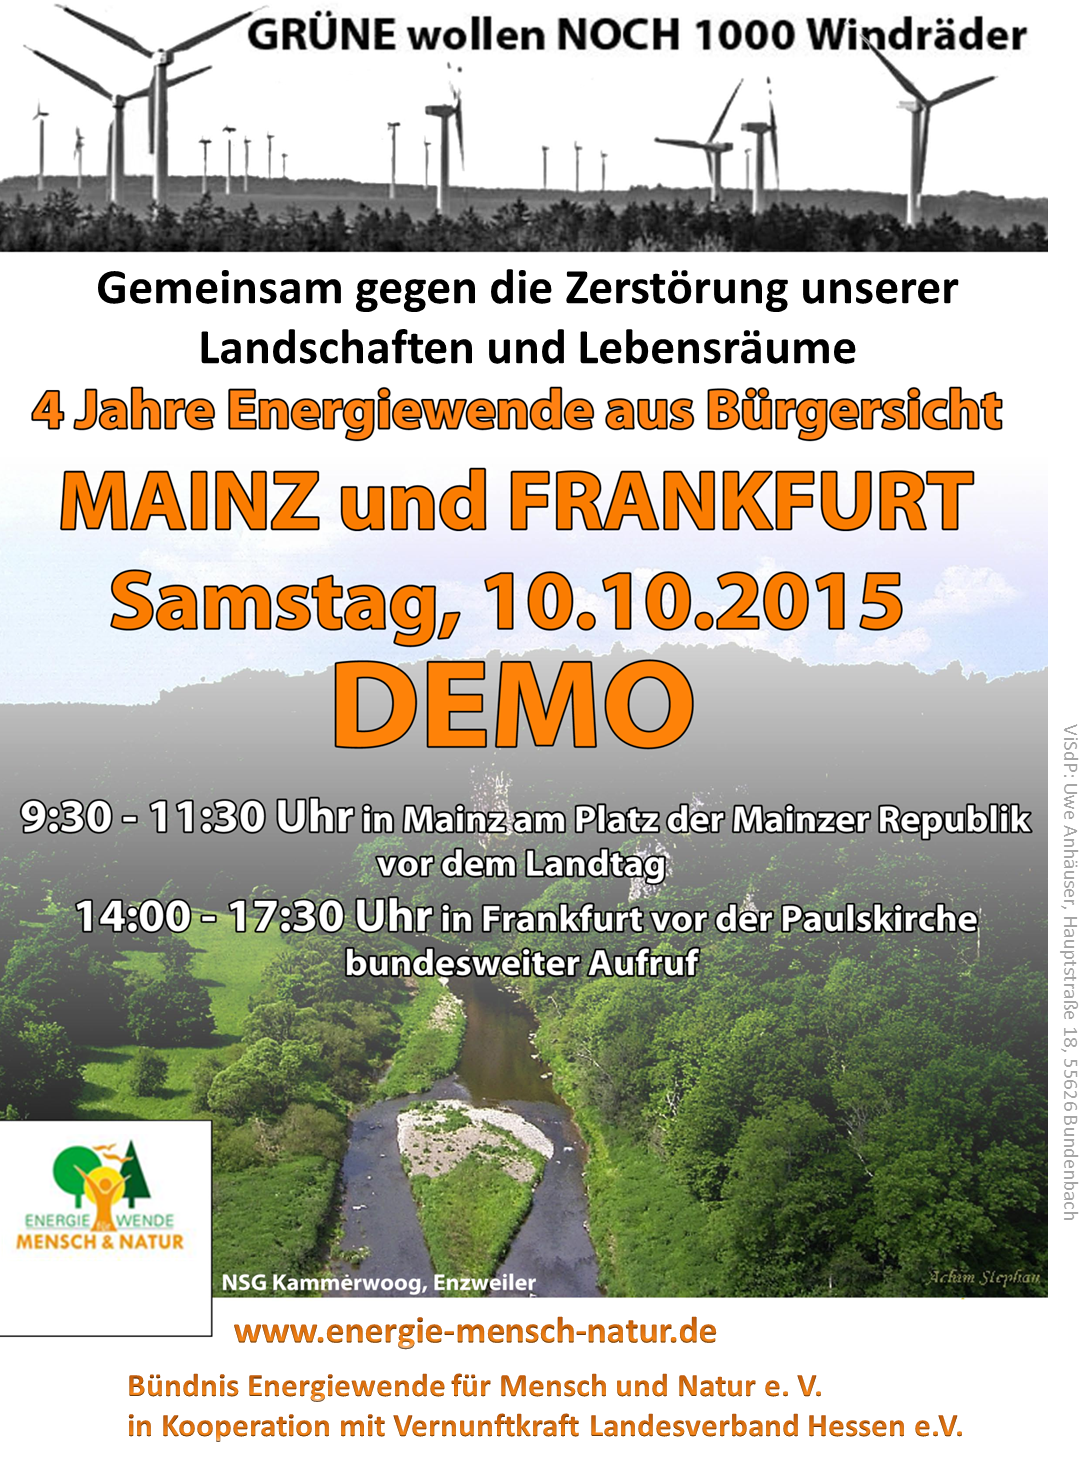 Aufruf zur Demonsration gegen den weiteren Ausbau der Windenergie am 10.10.2015 in Mainz